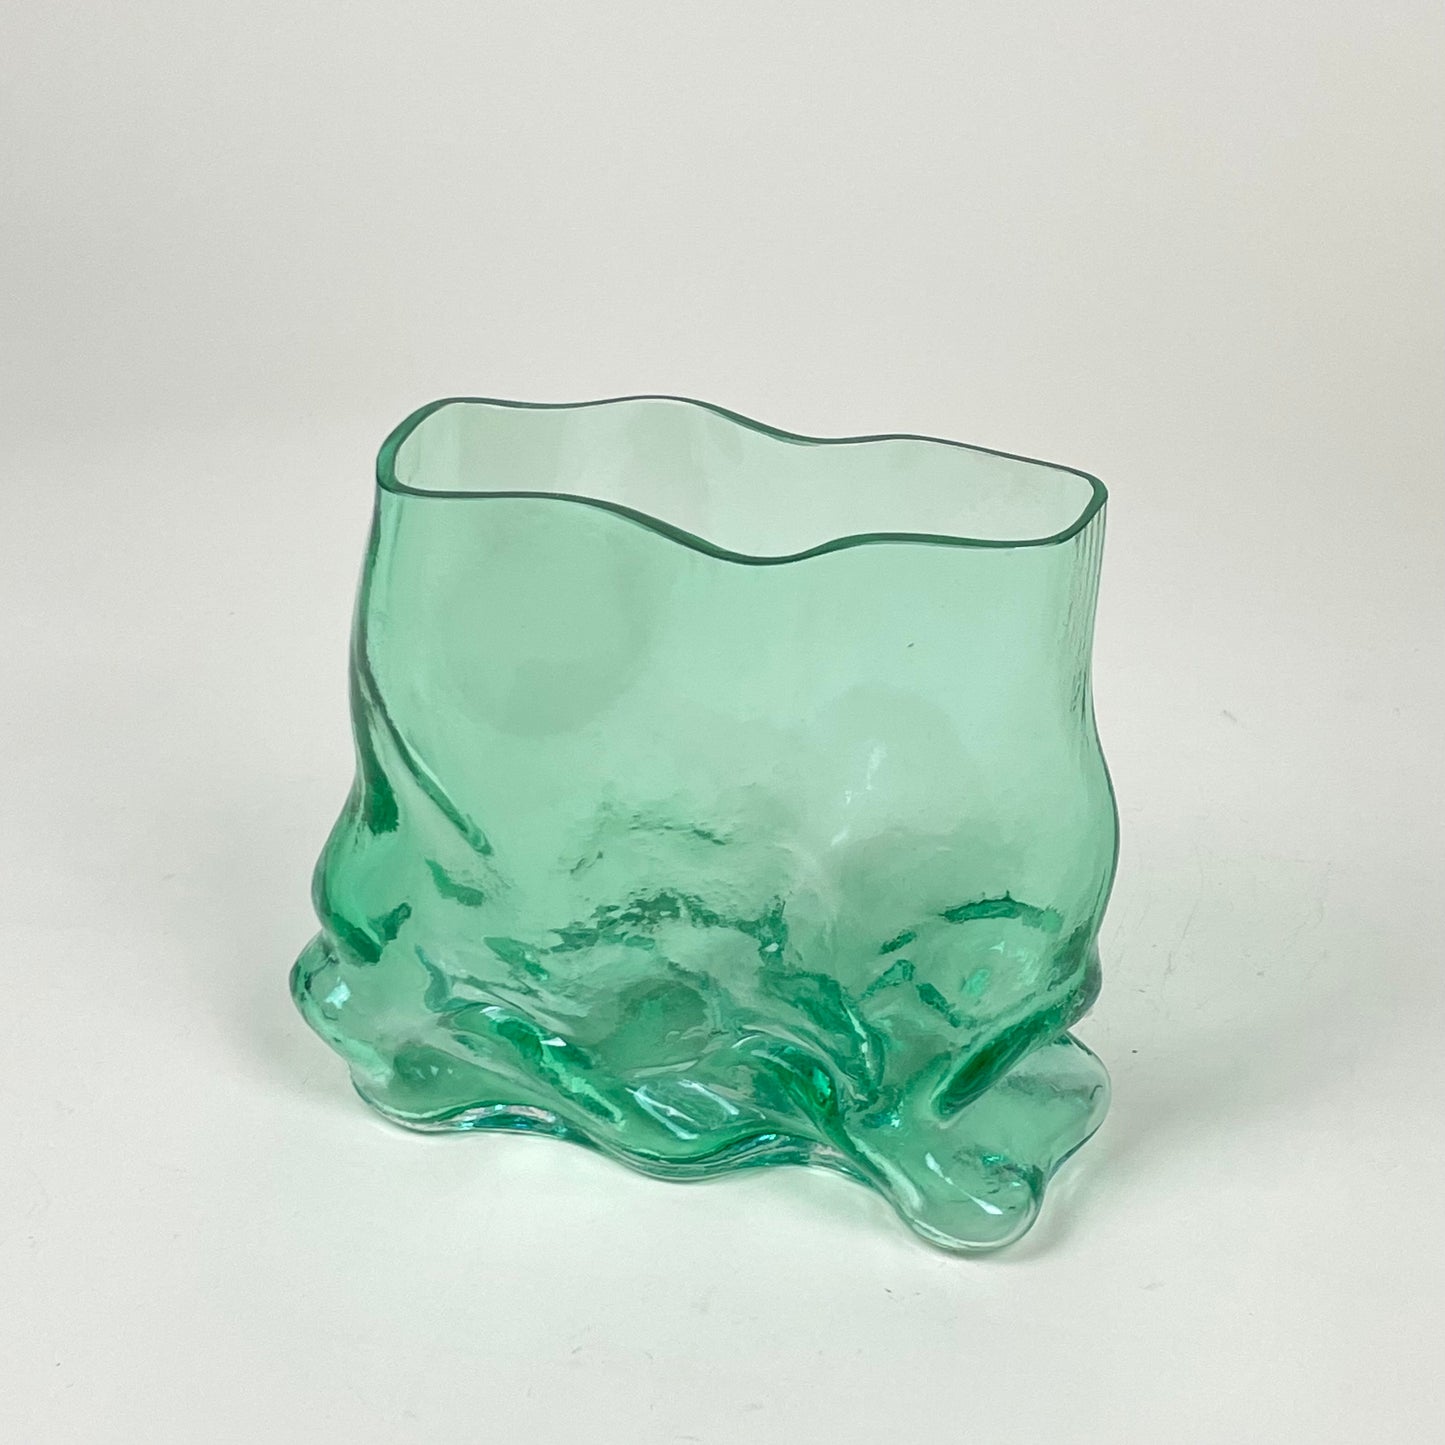 Glass vase by Lisa Reiser